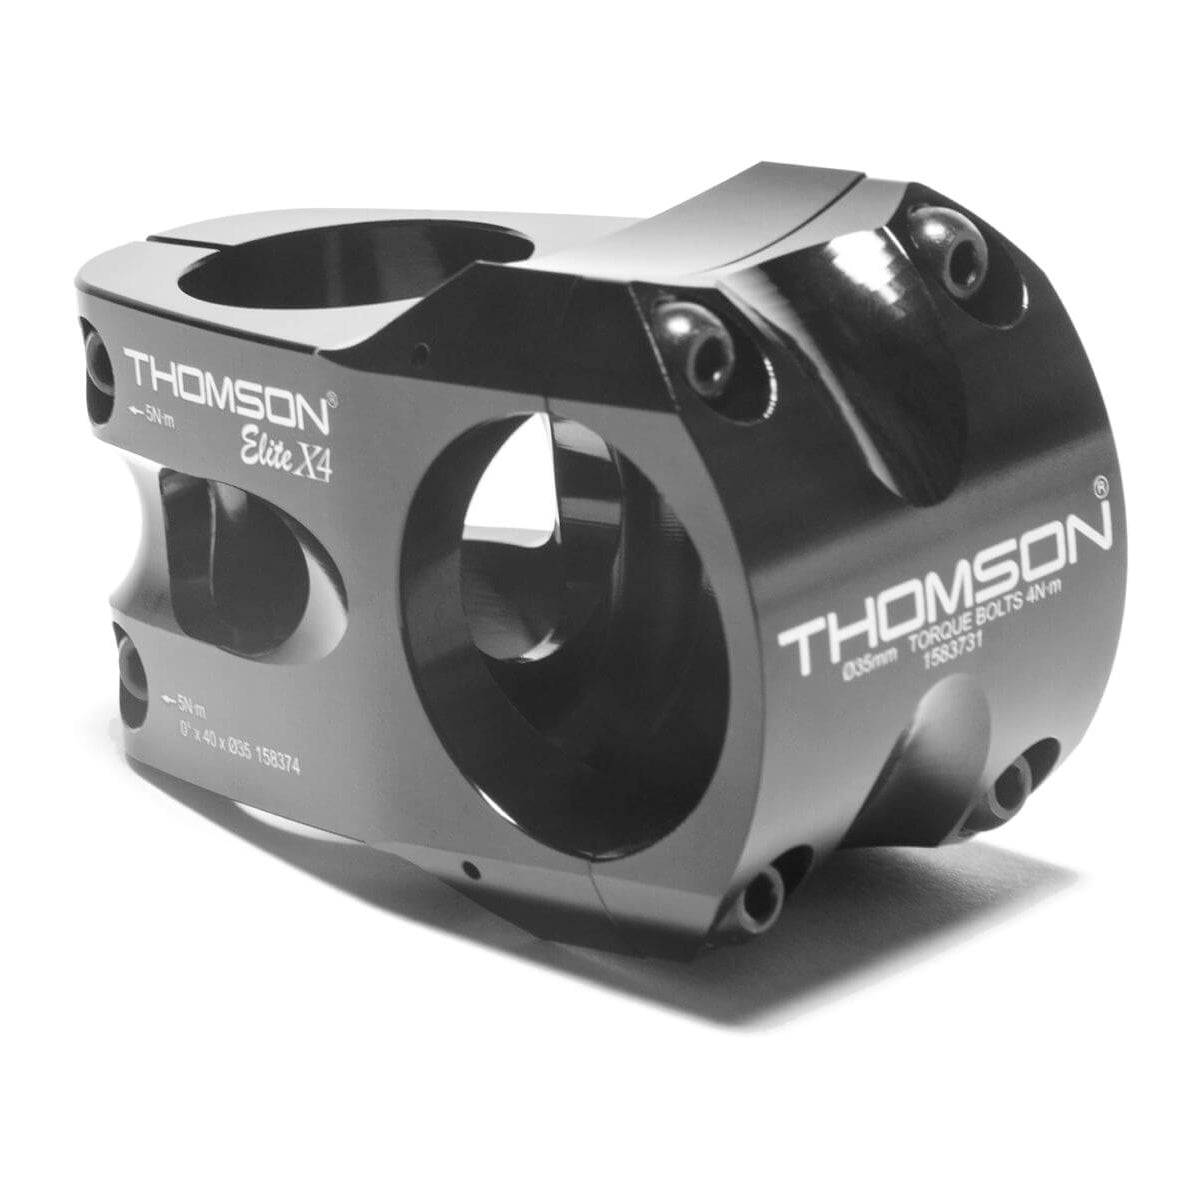 Thomson Elite X4 Stem - Black - 31.8mm - 40mm x 0 Degree - 1 1-8th Inch